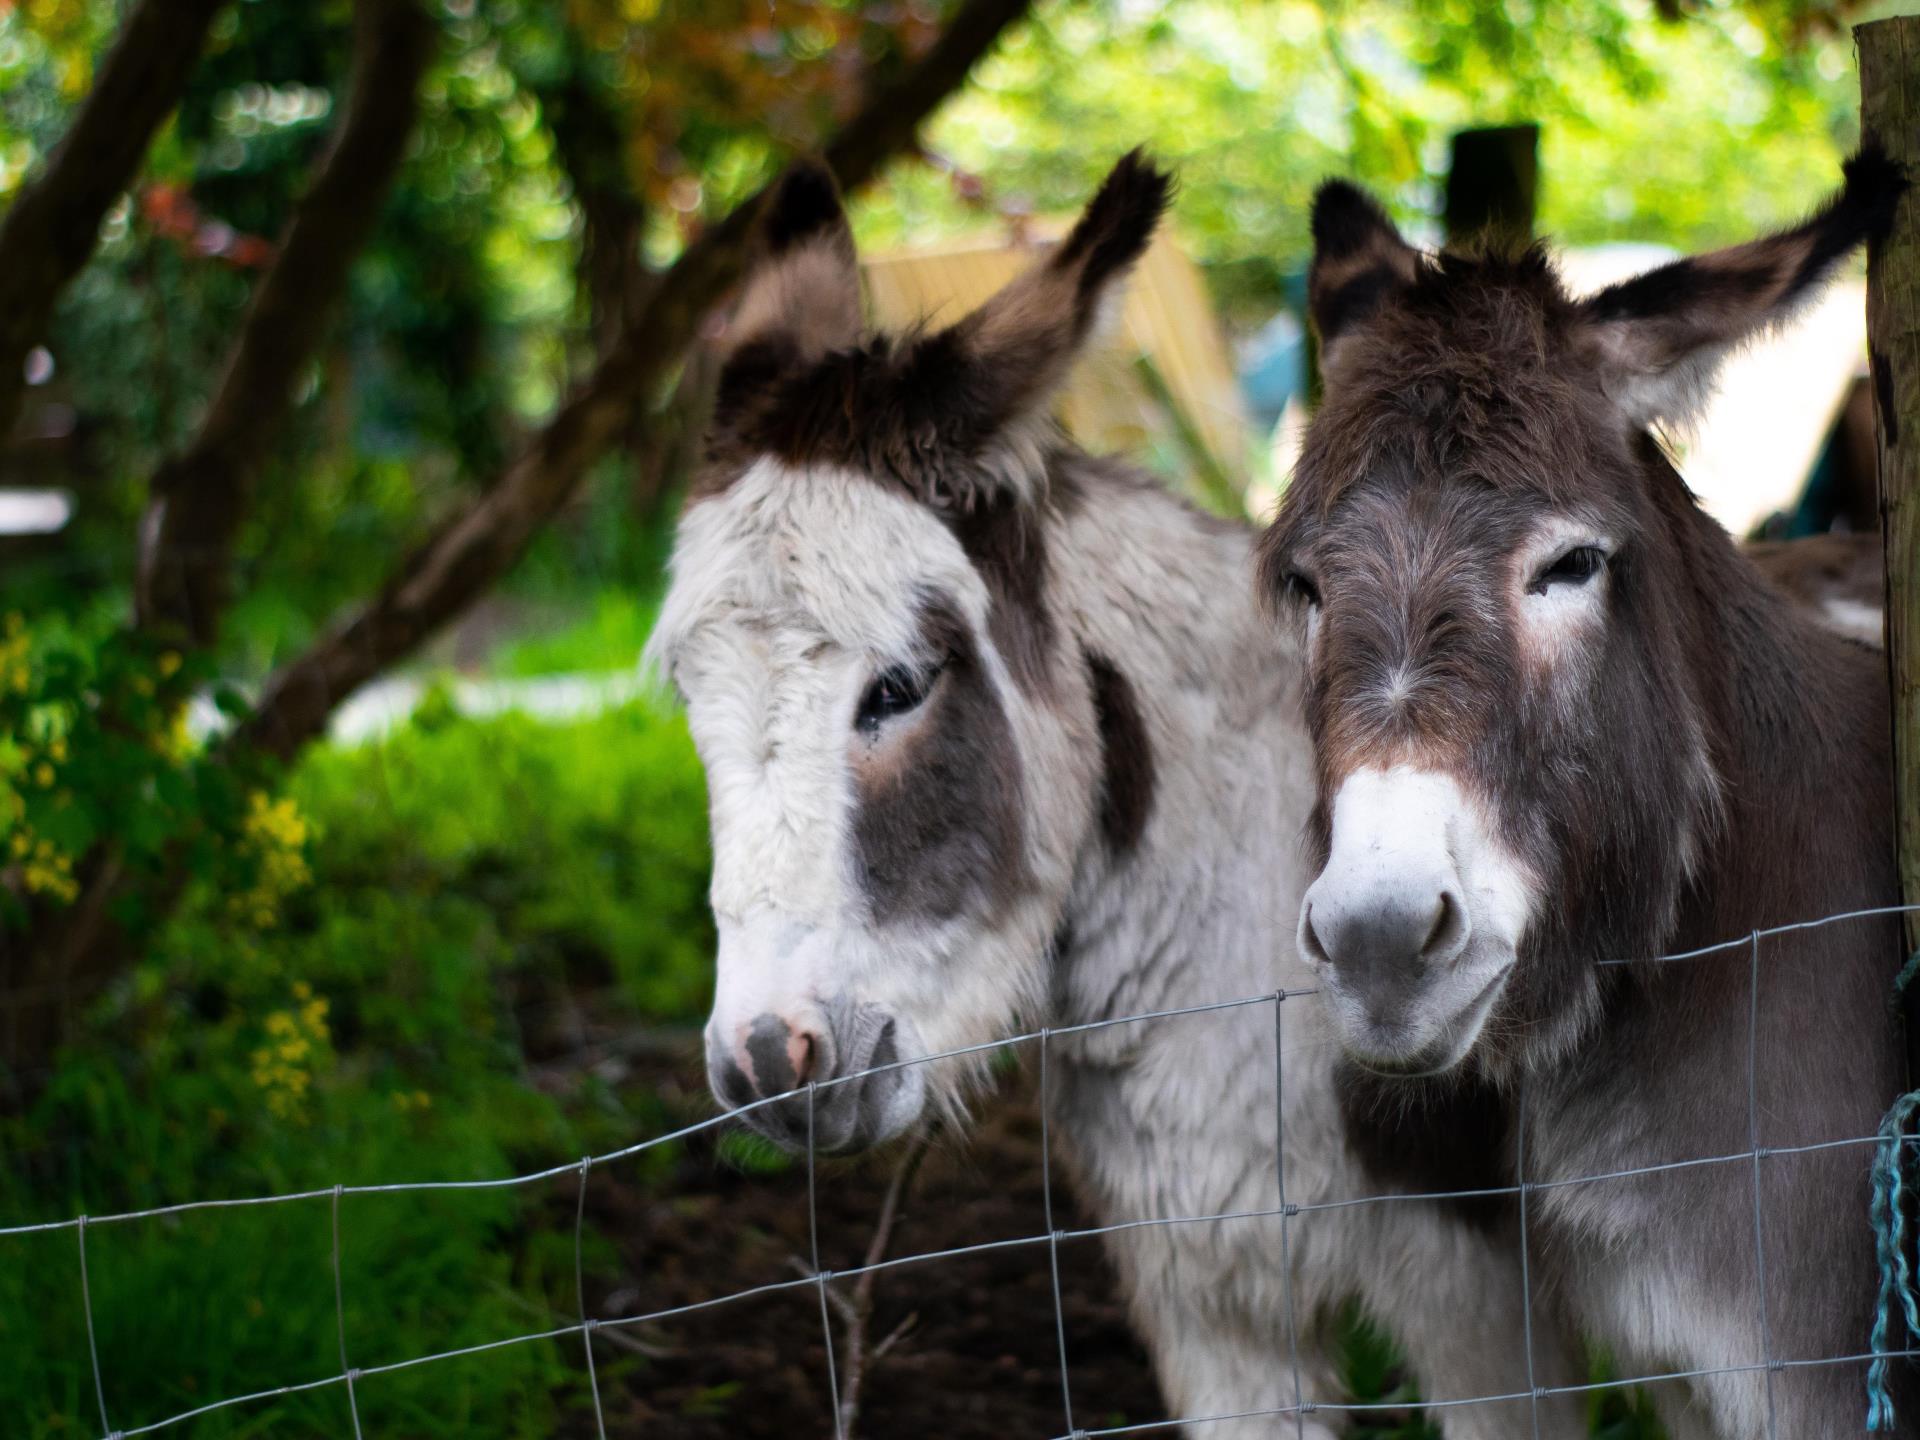 Rosie and Jasmine - Resident Donkeys